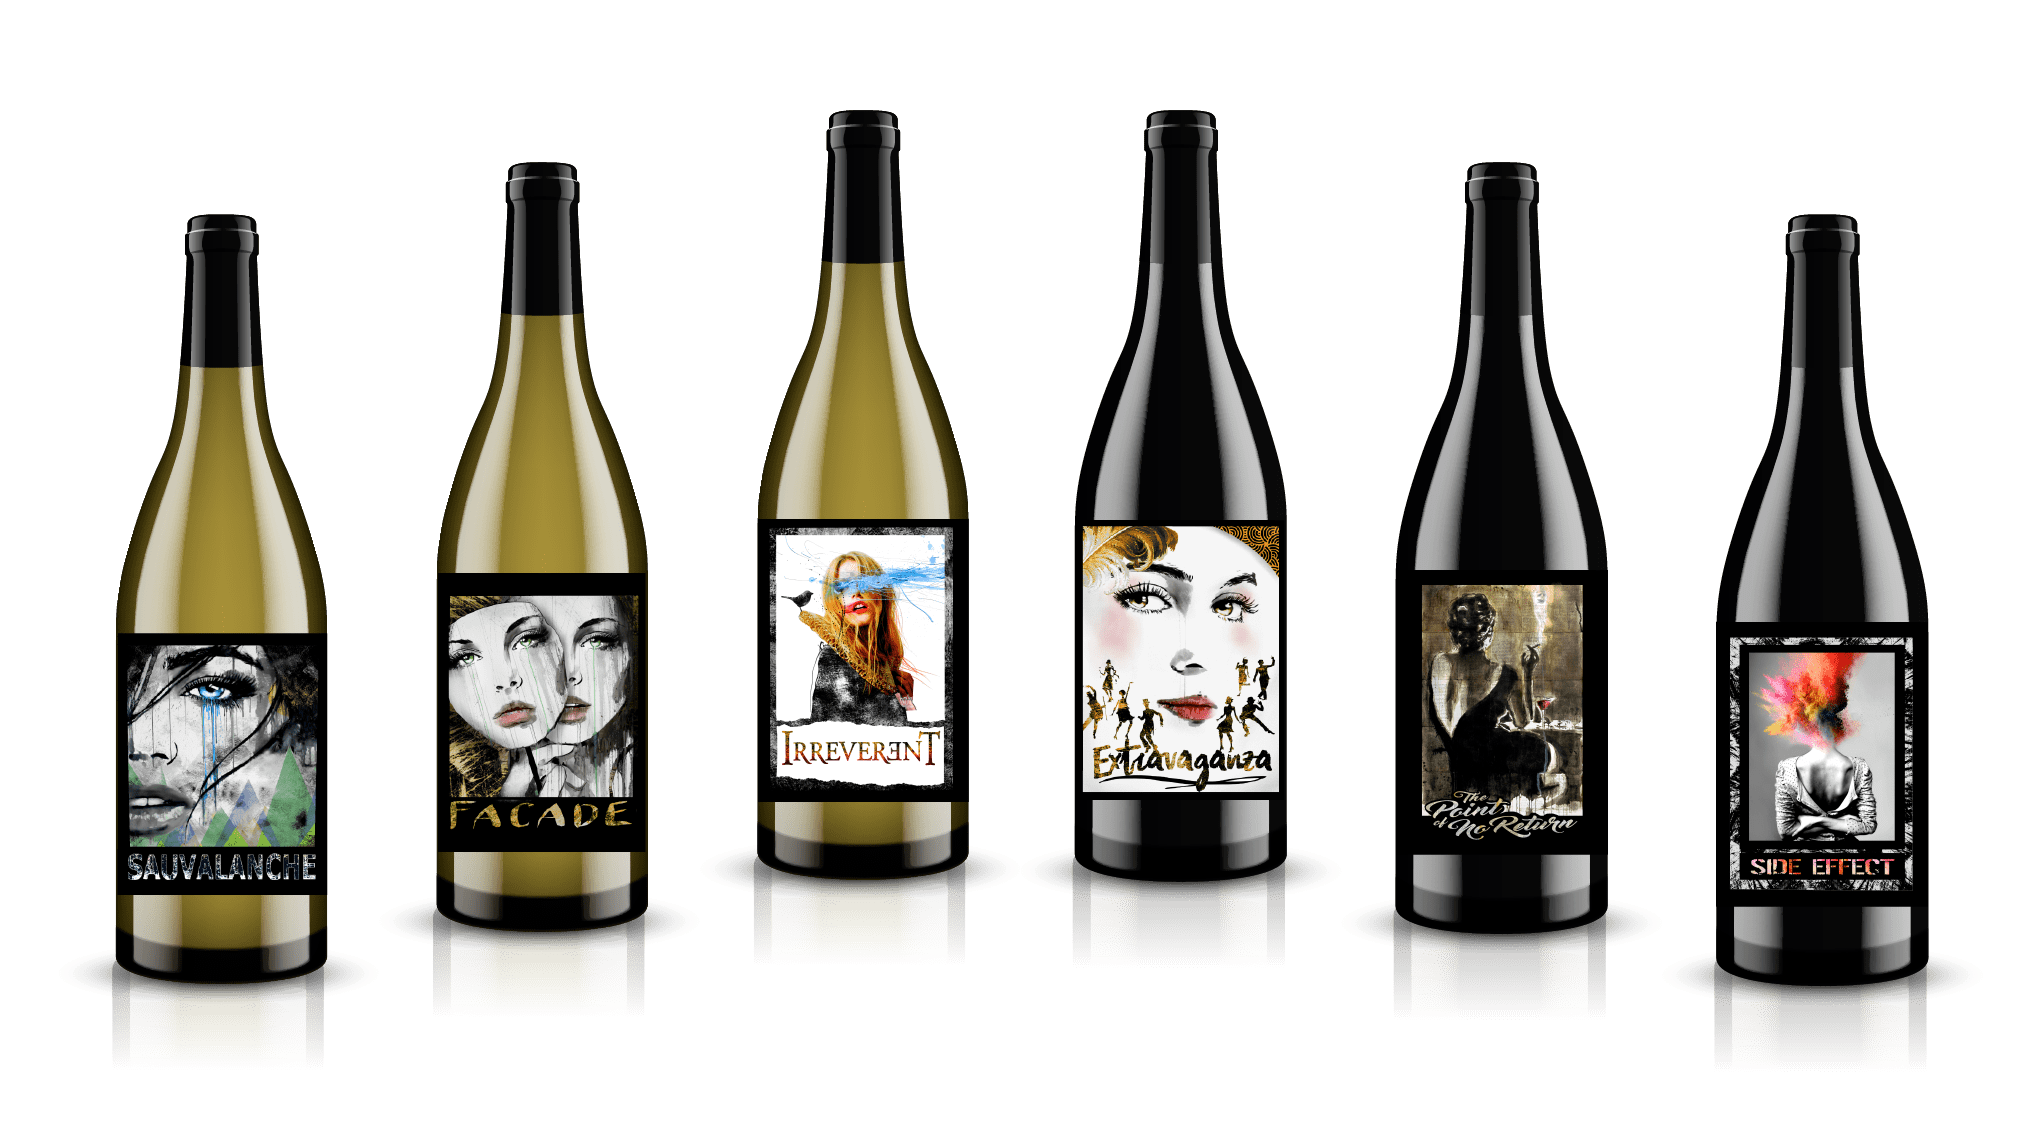 Massalto pure and powerful Washington Wine bottle lineup